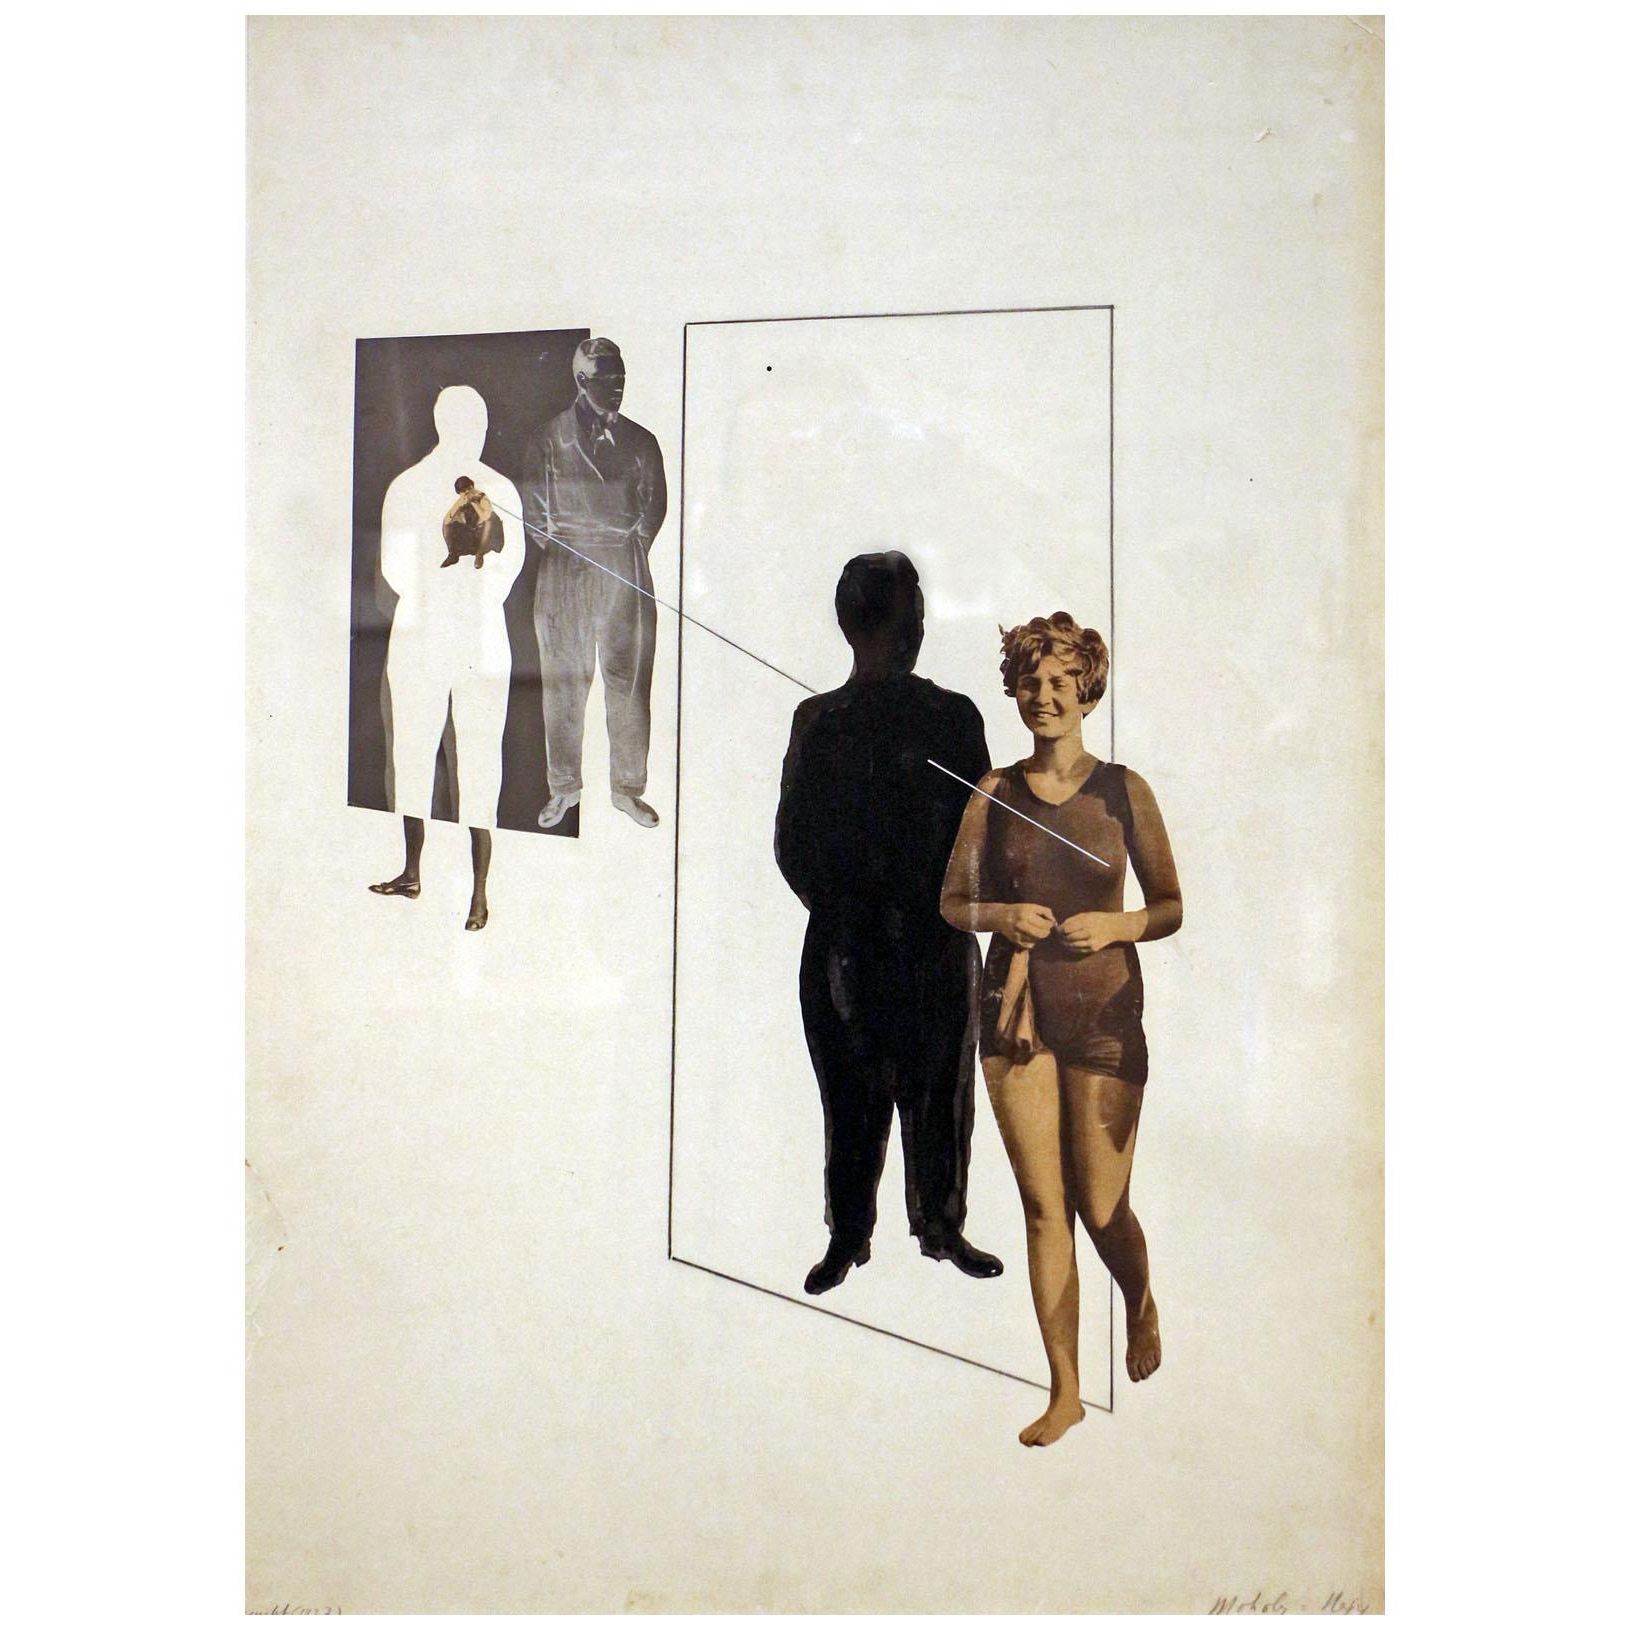 Laszlo Moholy-Nagy. Jealousy. 1927. George Eastman Museum NY